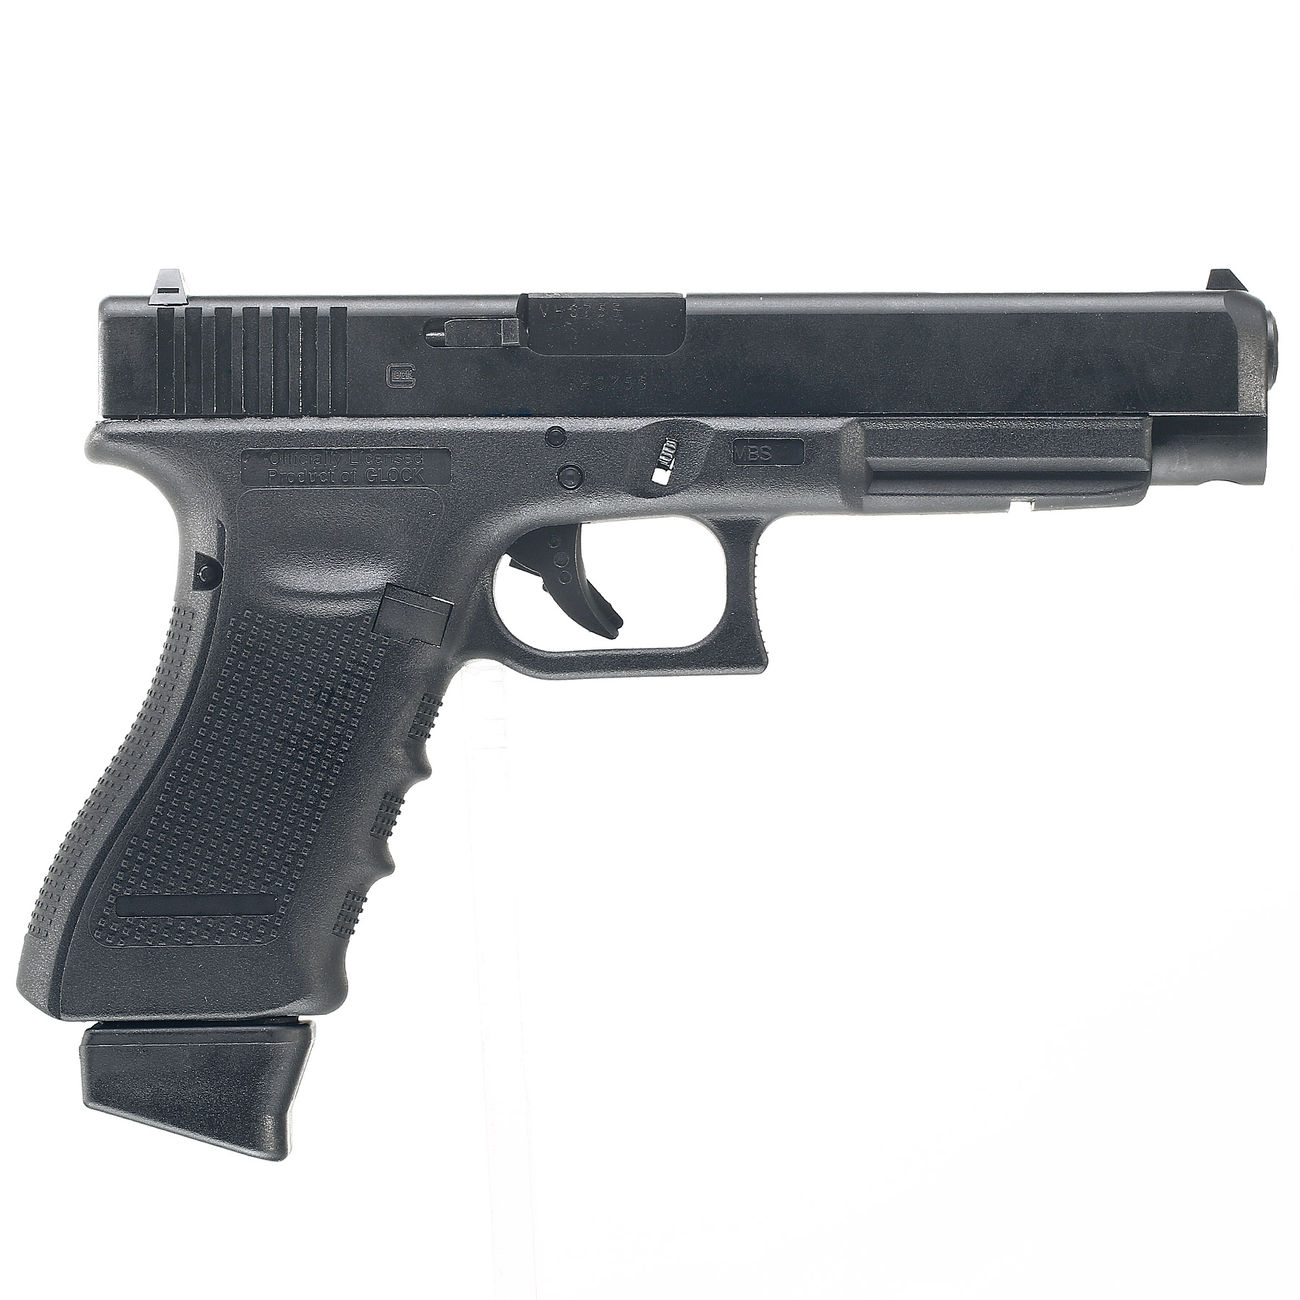 VFC Glock 34 Gen. 4 mit CNC-Metallschlitten GBB 6mm BB schwarz - Deluxe-Edition Bild 5